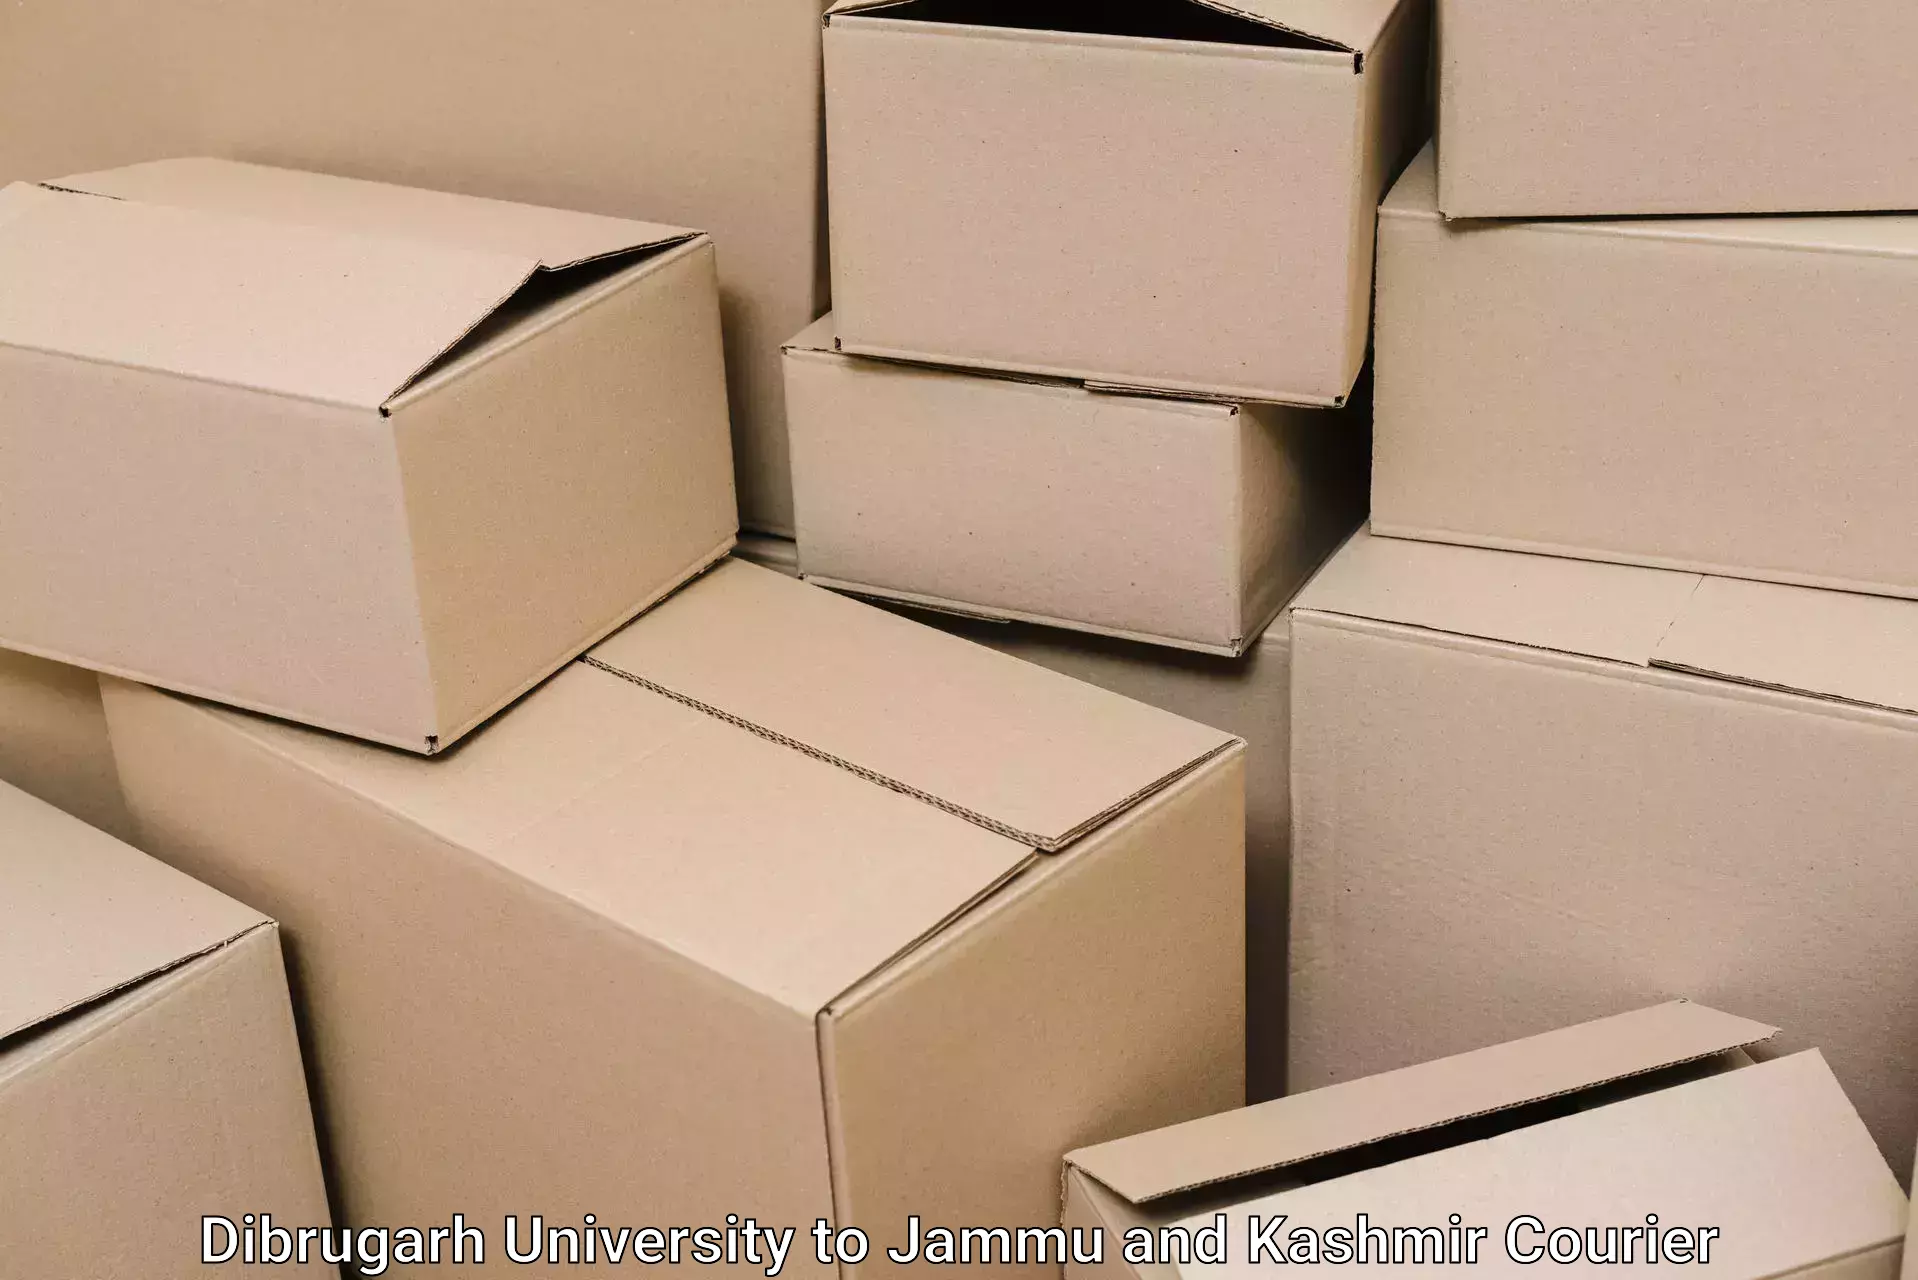 Furniture moving plans Dibrugarh University to Ramban